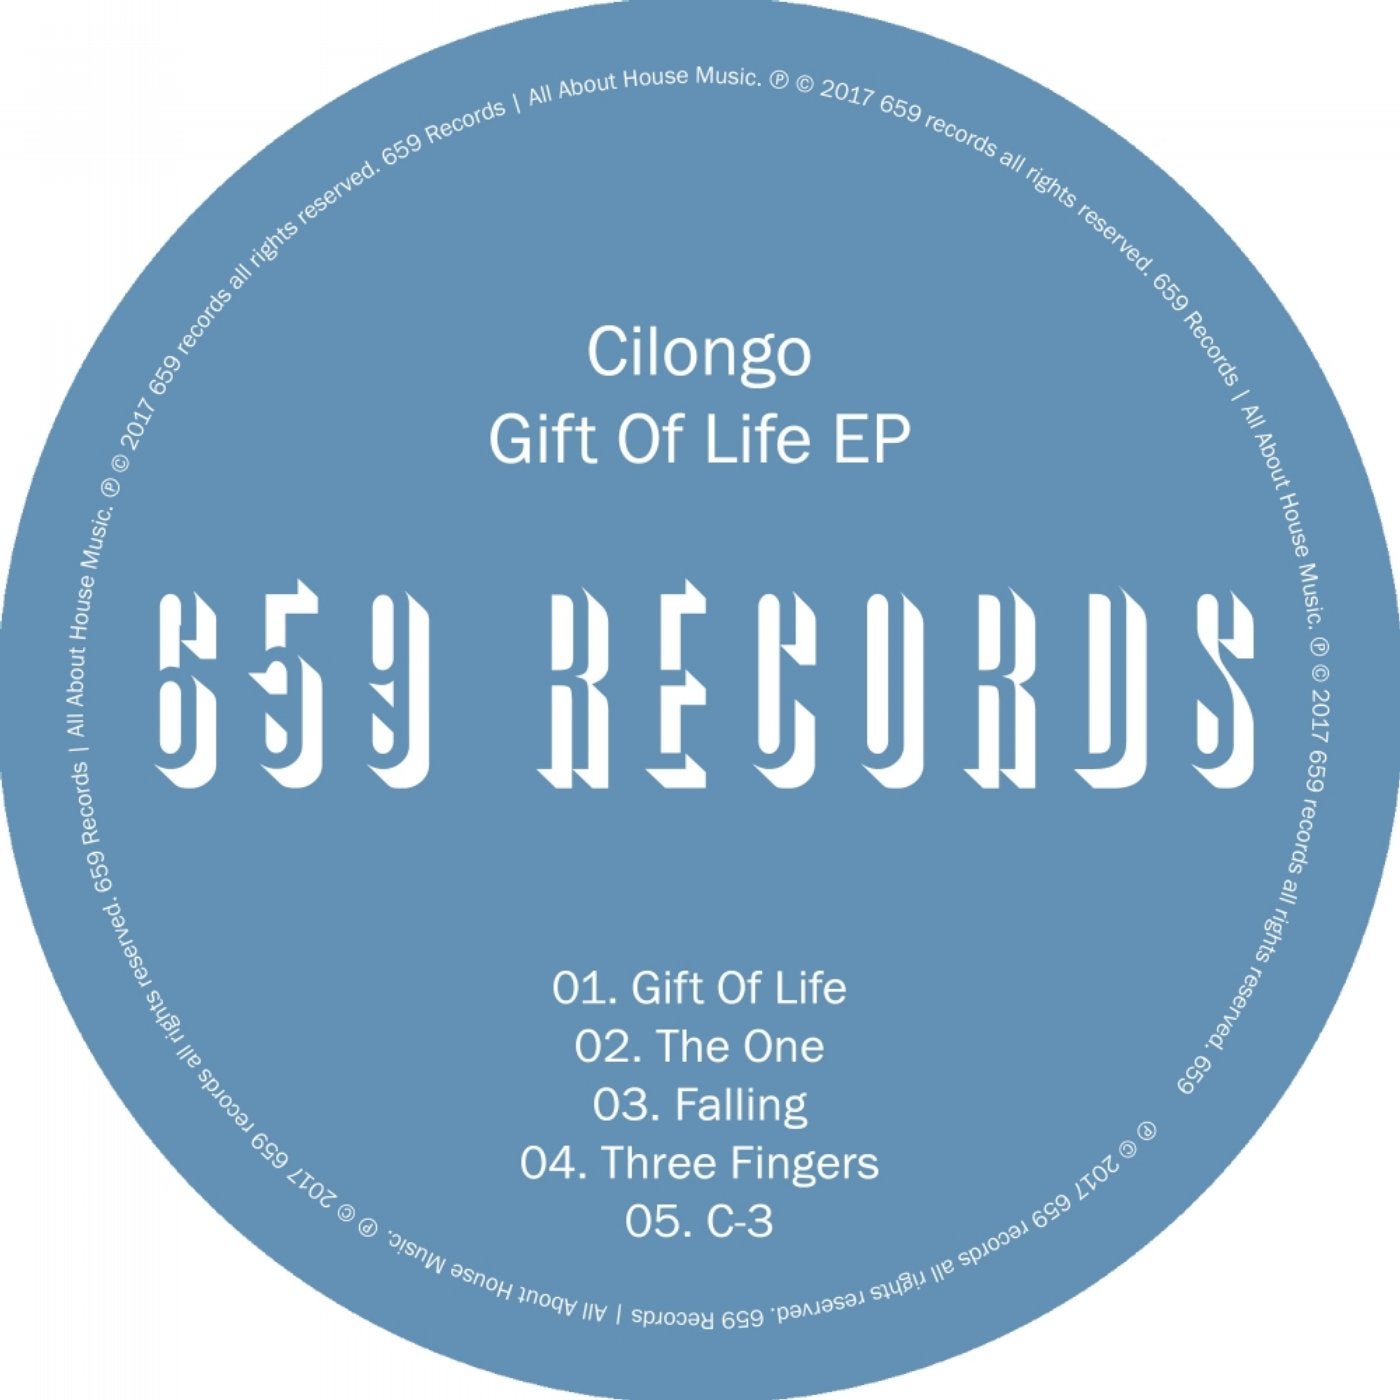 Gift Of Life EP